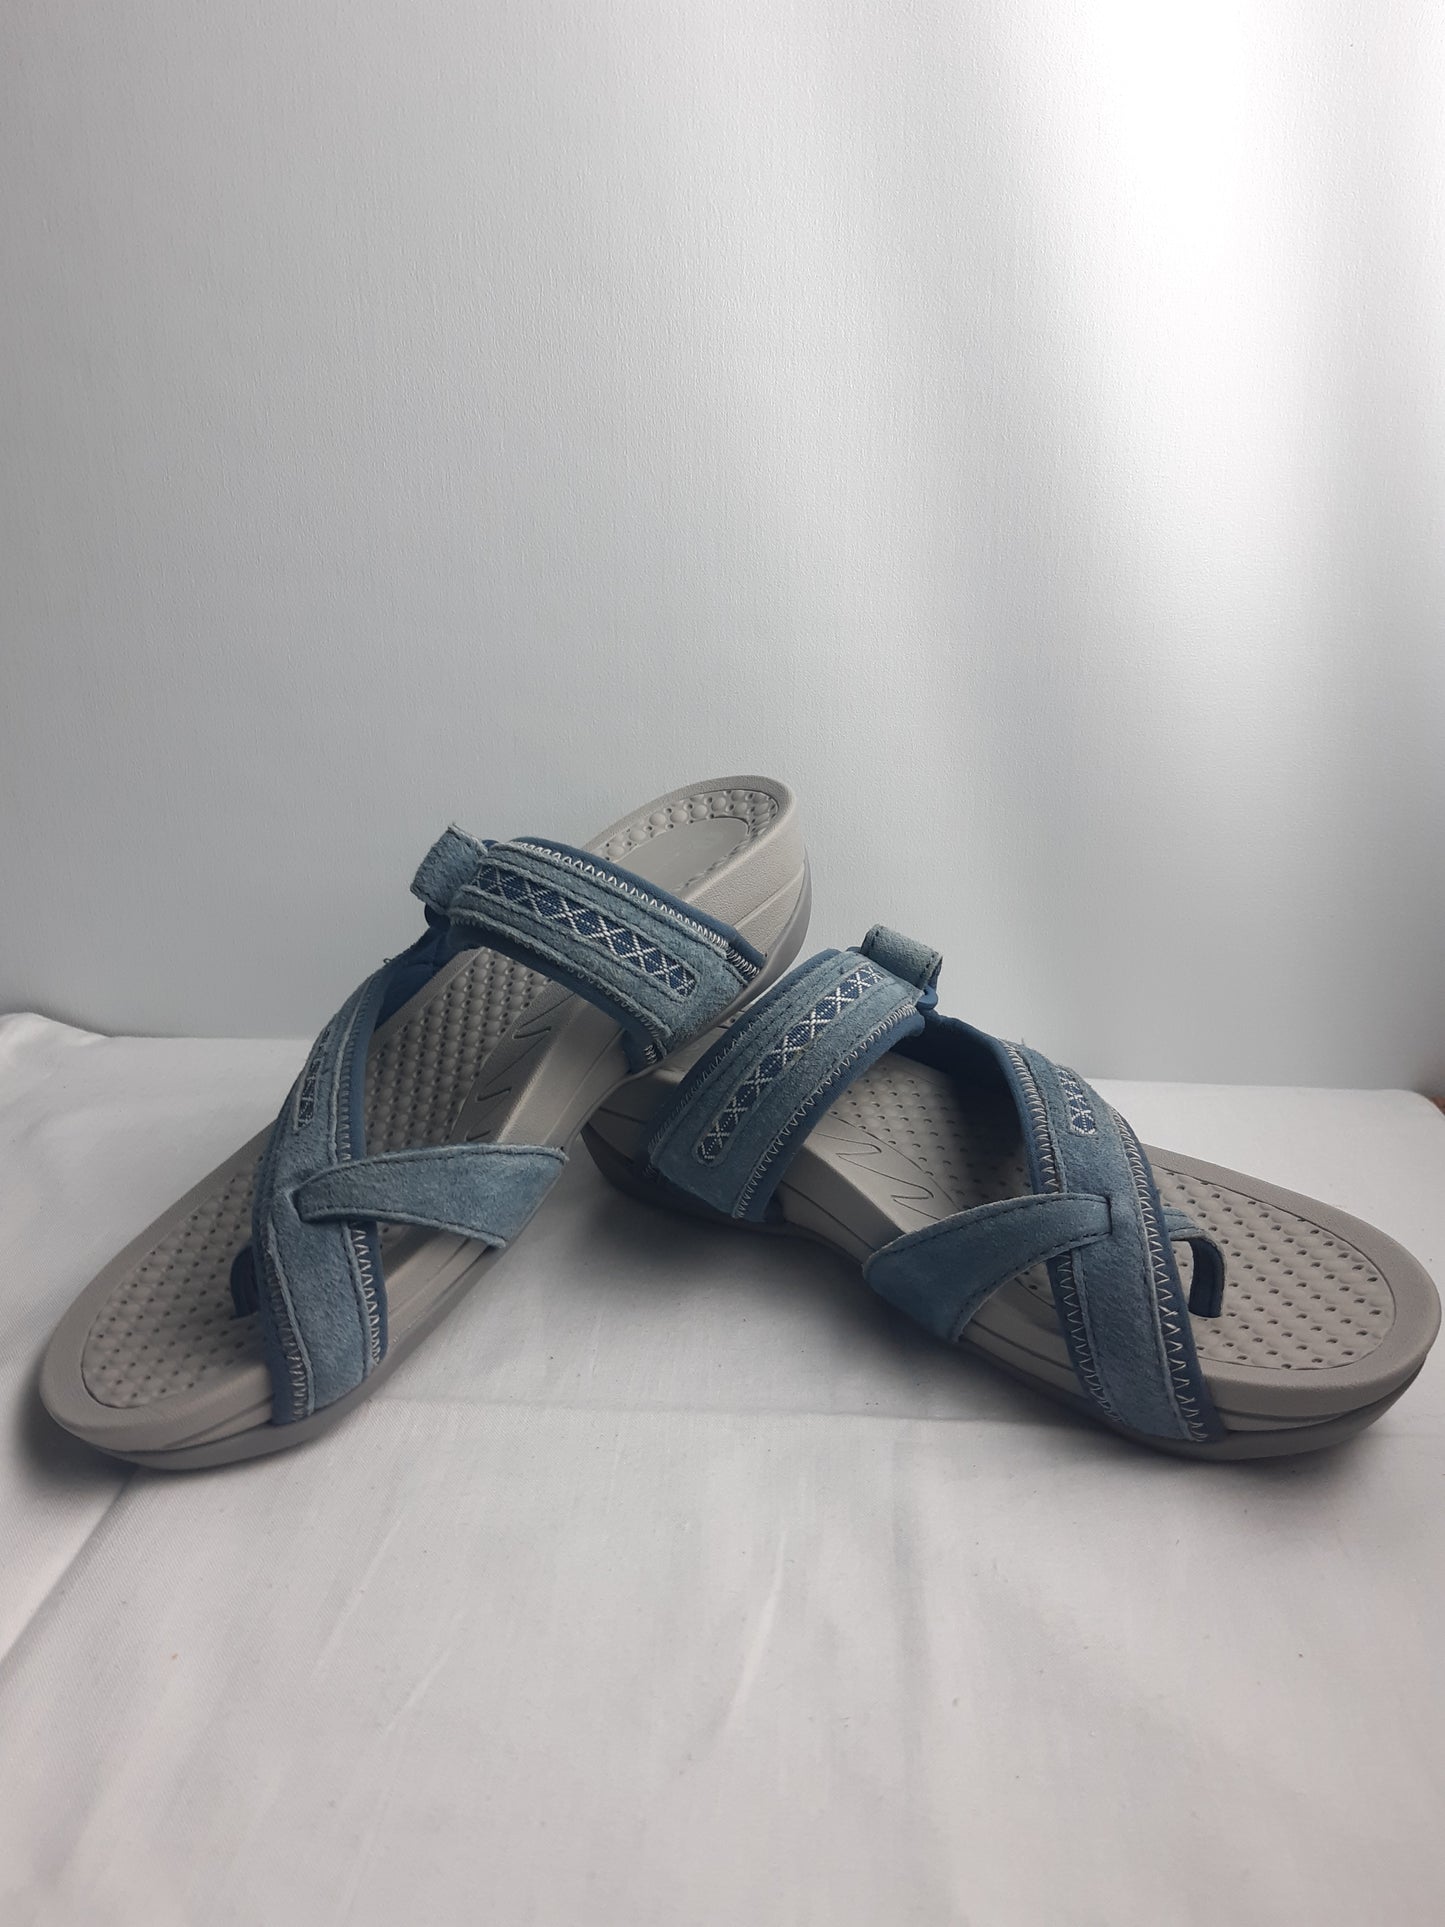 Pavers Blue Women's Sandals Size 6